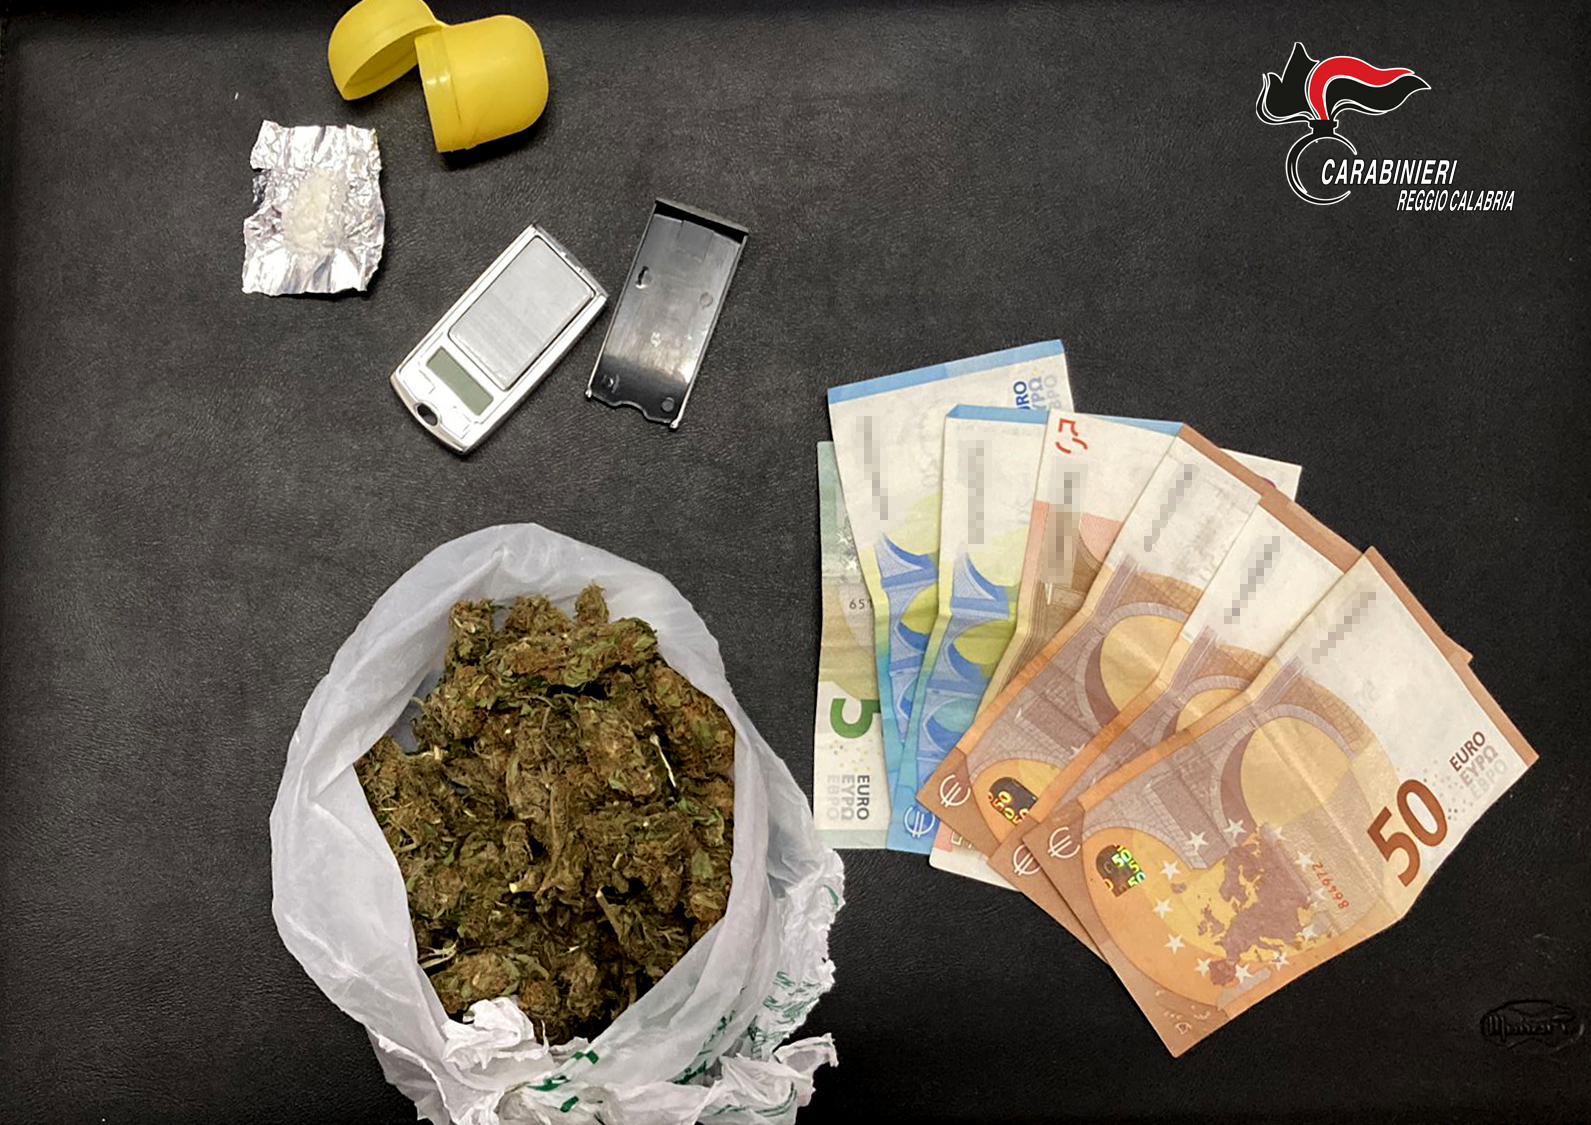 Rinvenuti dai carabinieri oltre 70 grammi di stupefacente e 300 banconote, arrestato 30enne